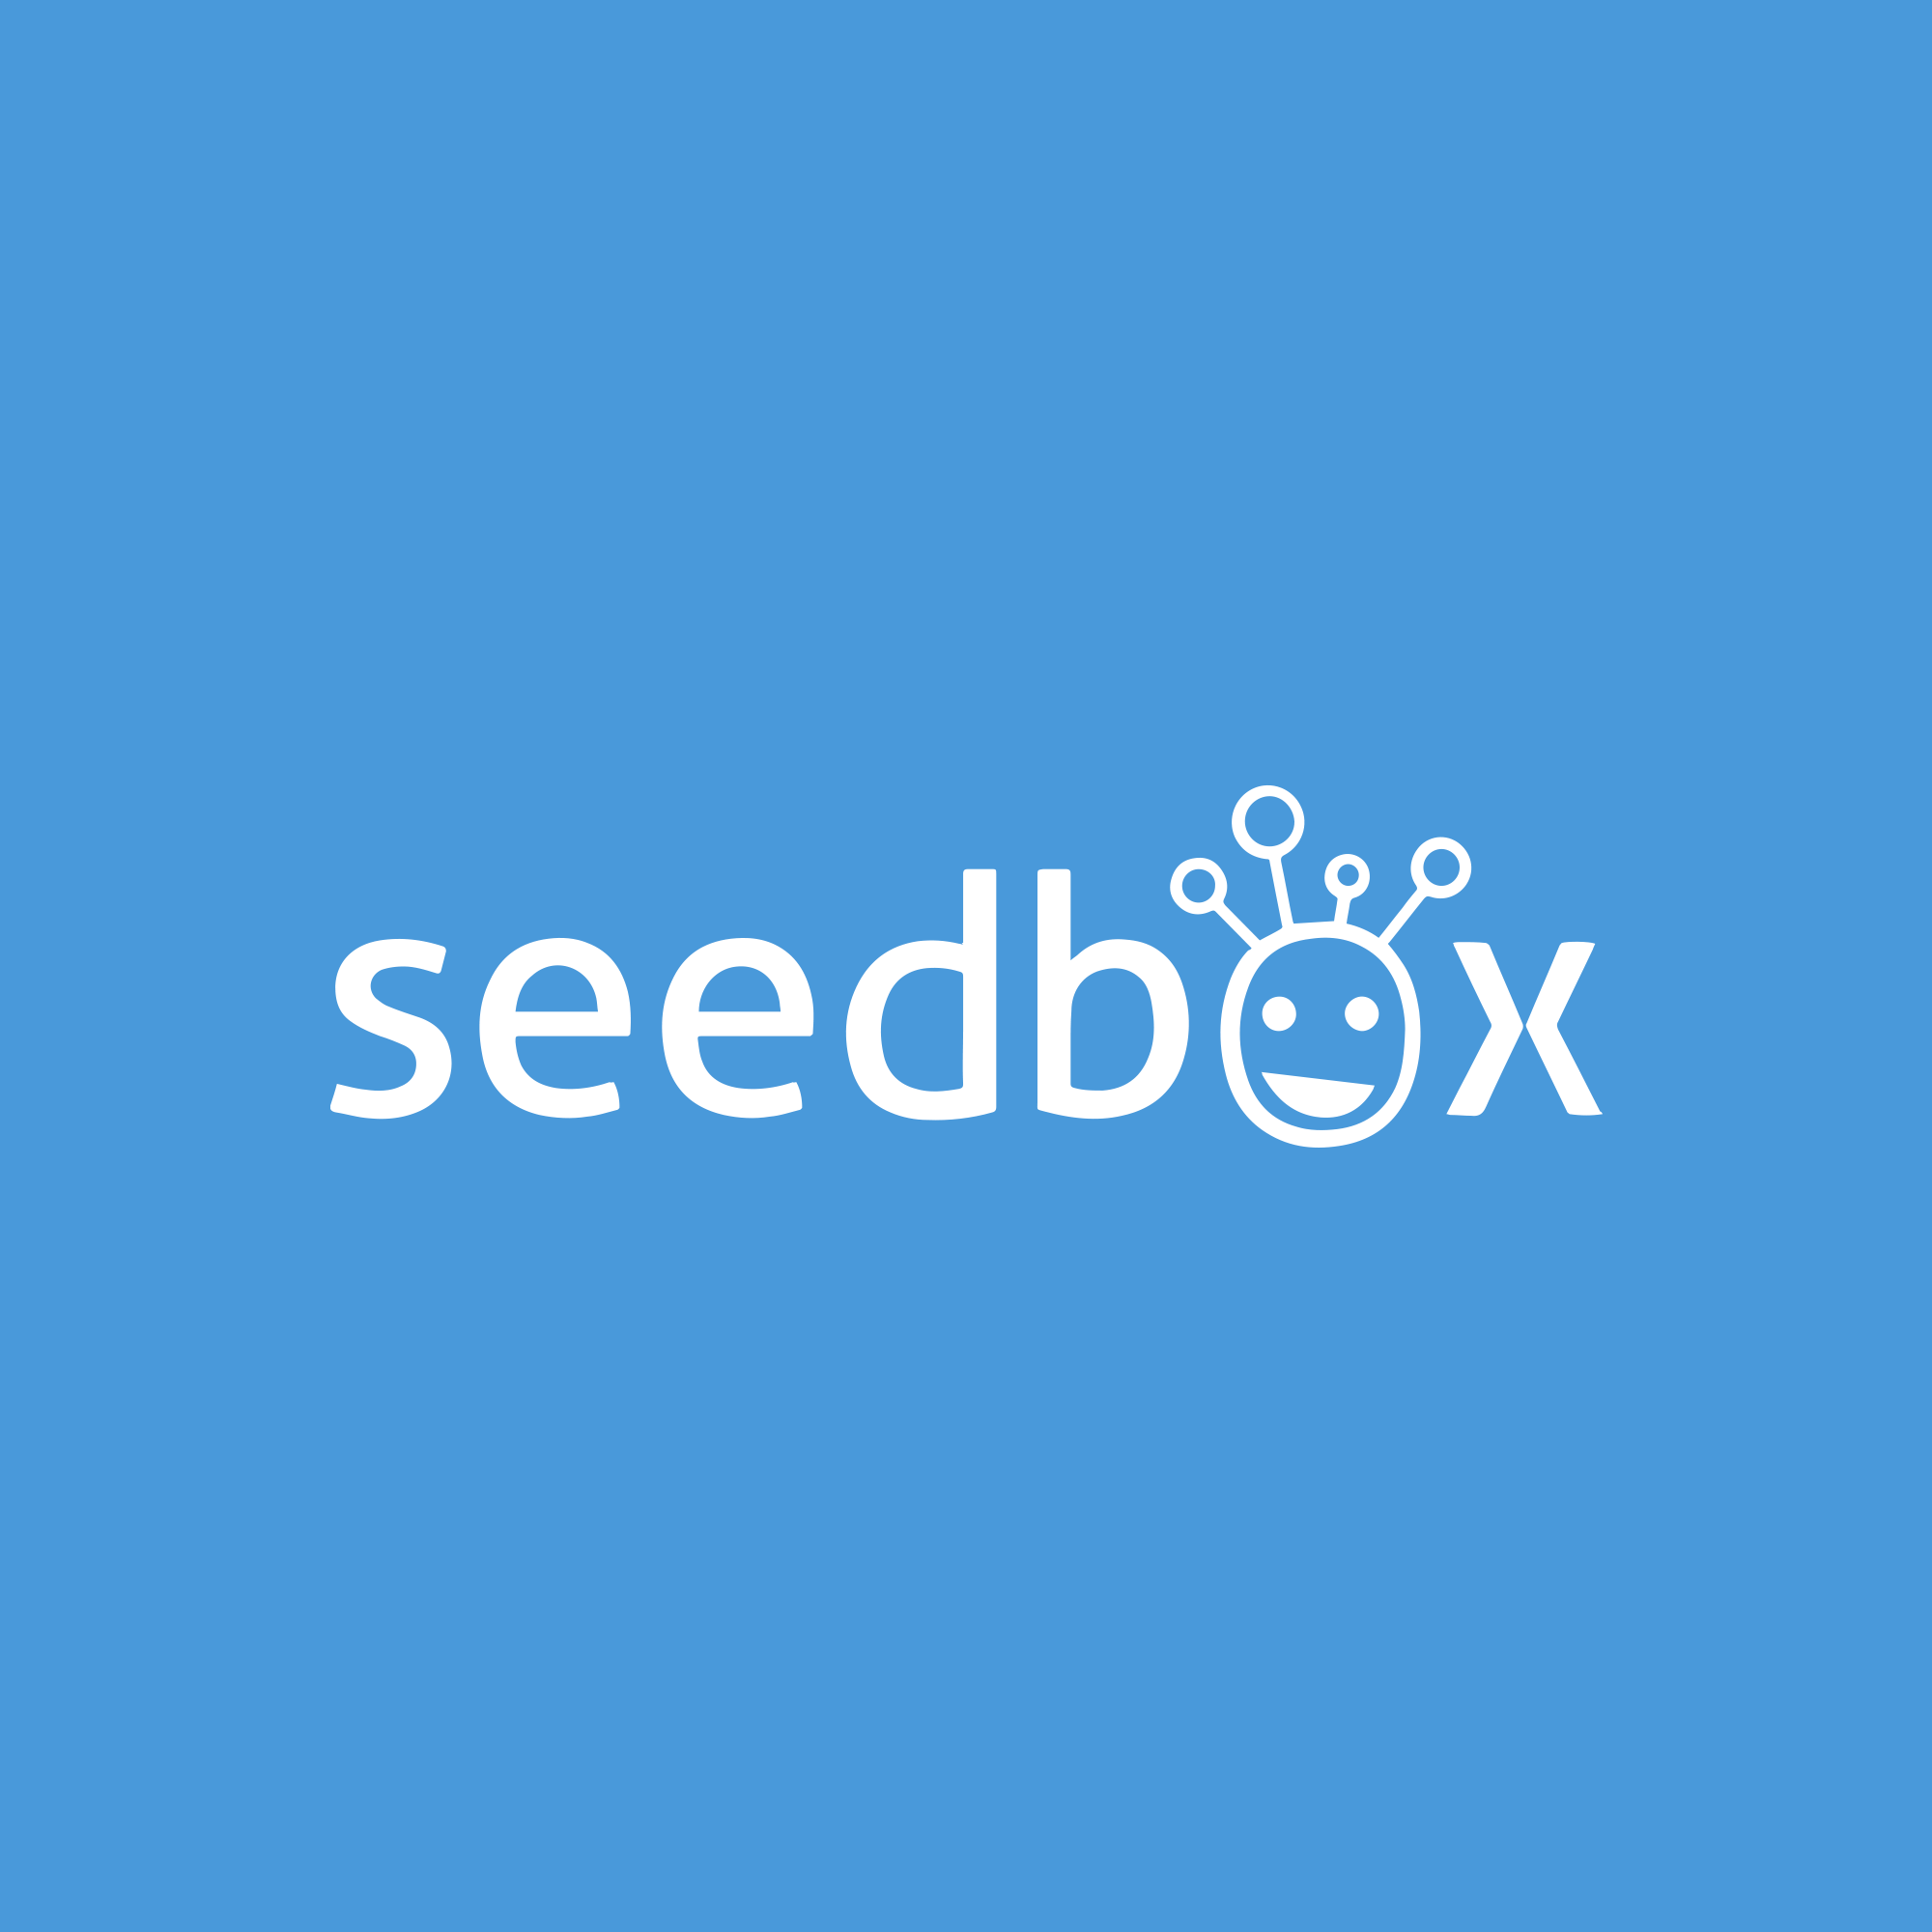 Seedbox Image Client